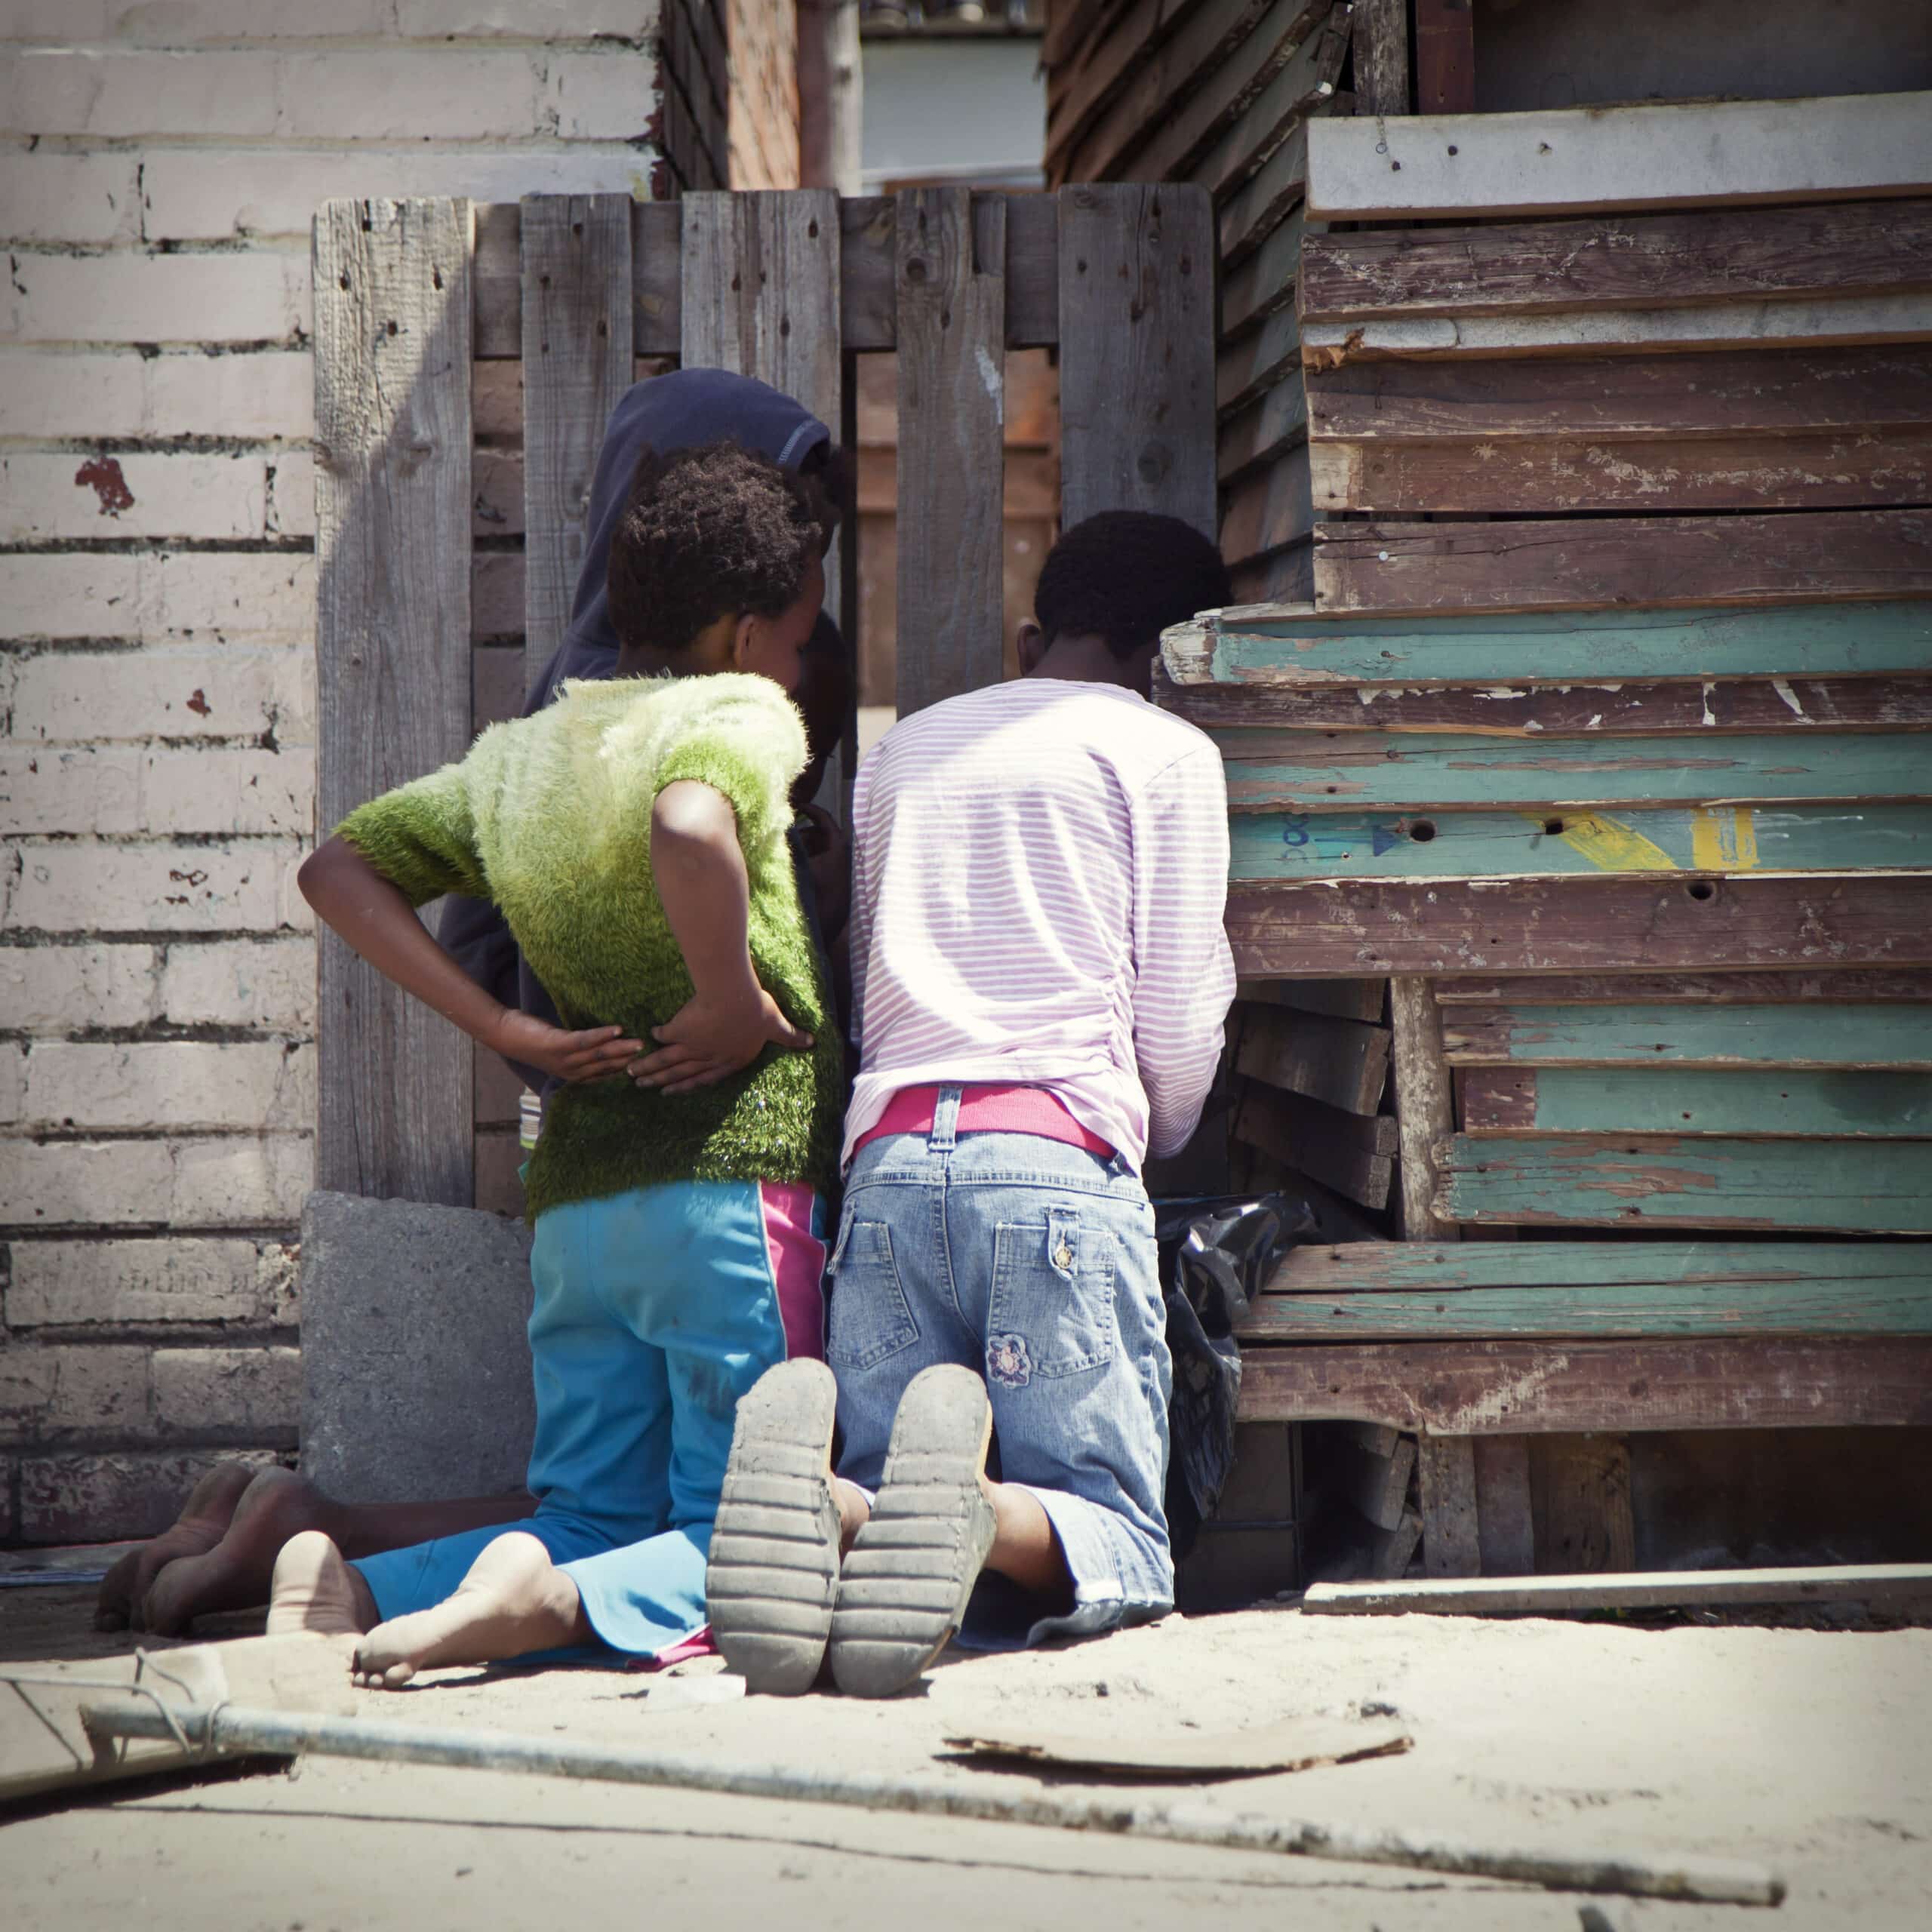 Zwei Personen sitzen vor einem improvisierten Hintergrund aus Holz zusammen. Eine trägt ein grünes Oberteil und blaue Hosen, die andere einen rosa Pullover und verwaschene Jeans. Sie scheinen in ein privates Gespräch vertieft zu sein. © Fotografie Tomas Rodriguez